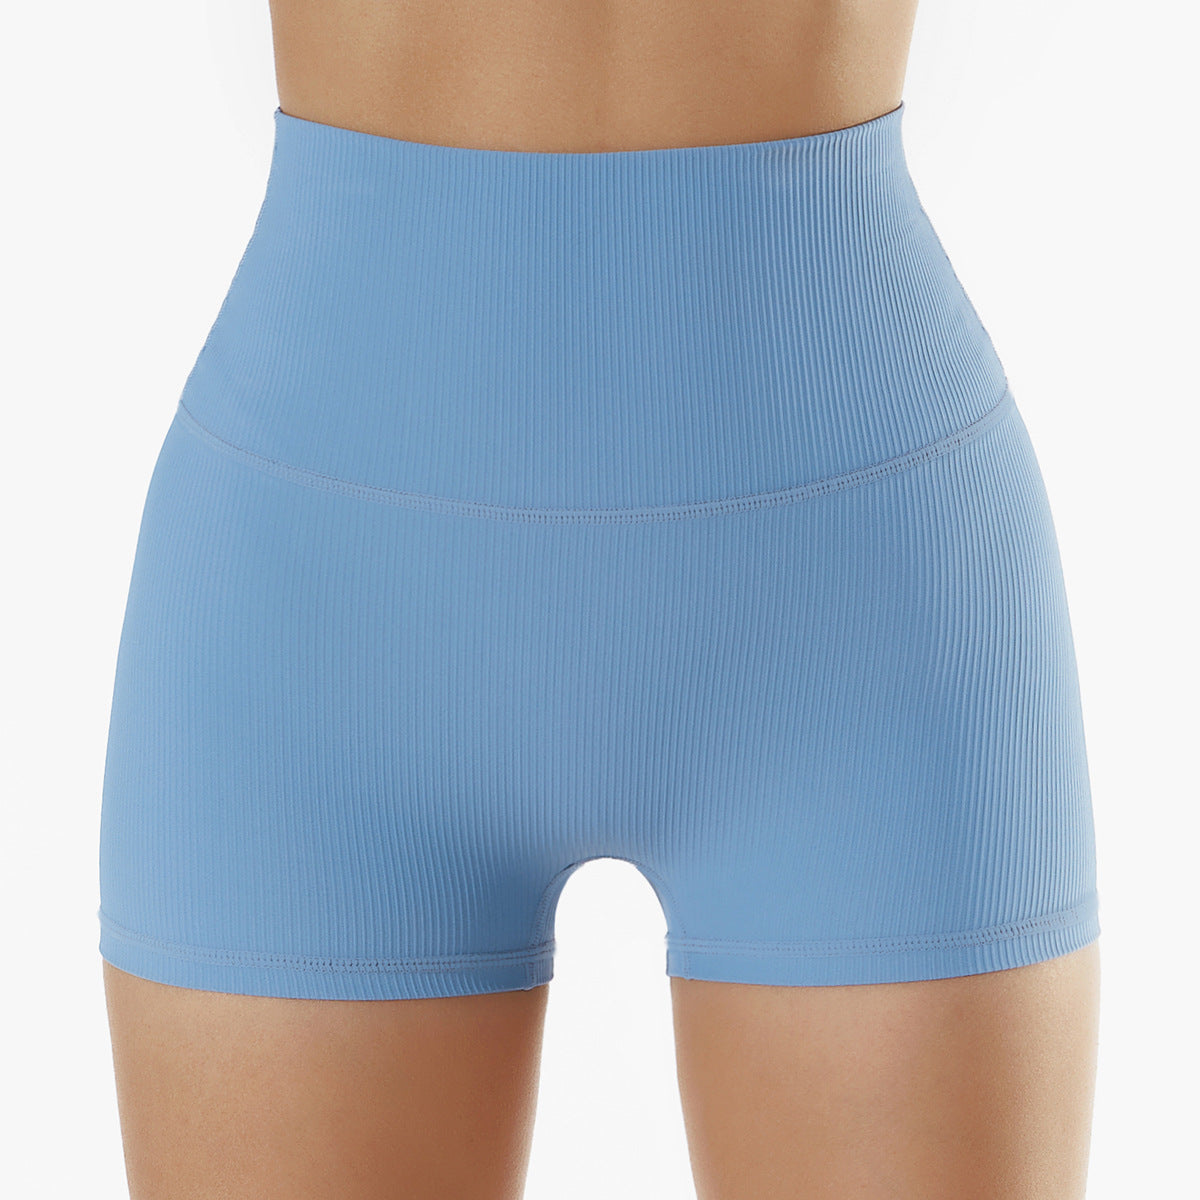 Ribbed Yoga Light Blue Shorts